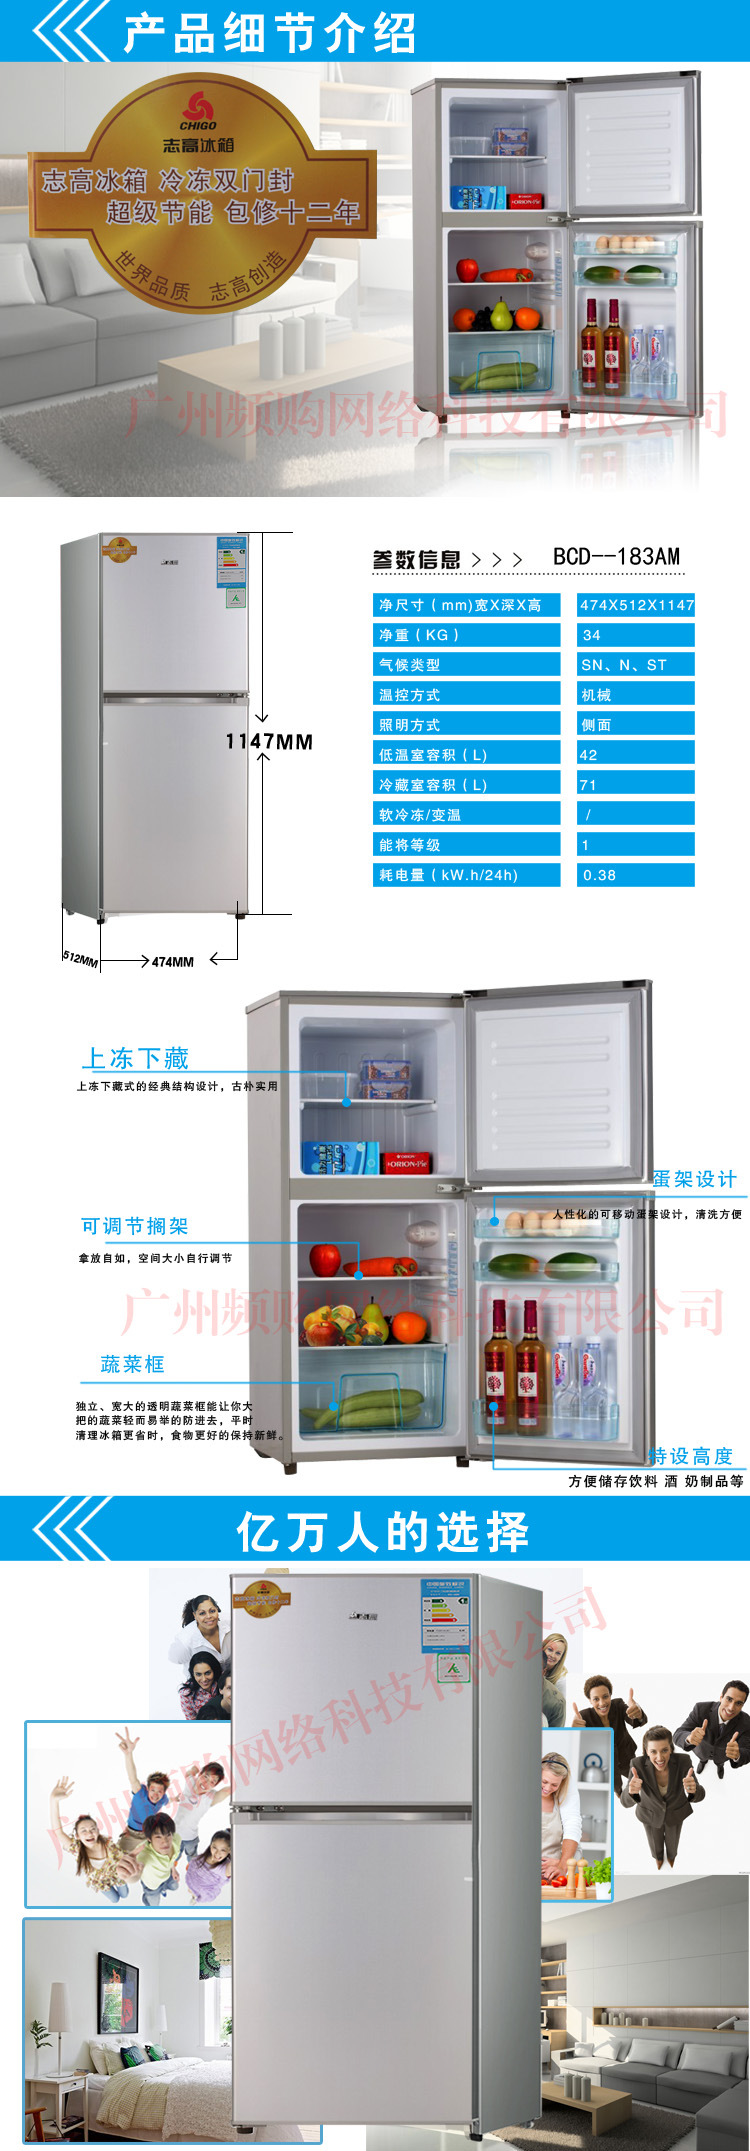 志高小型冰箱 说明书图片